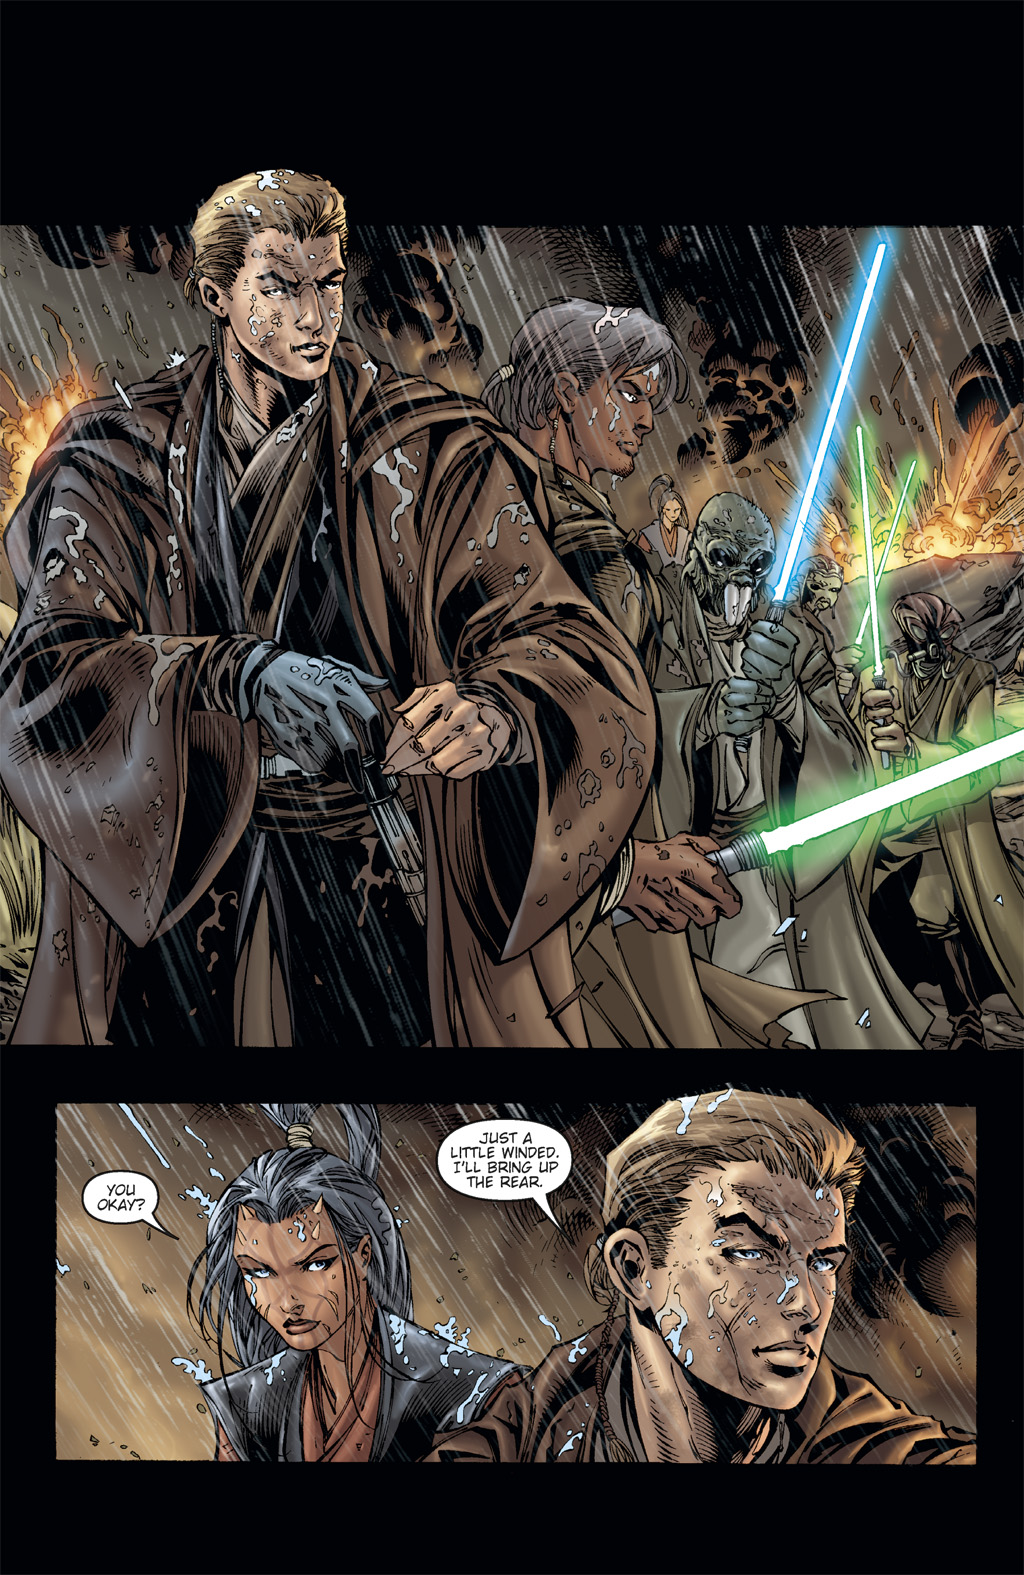 Read online Star Wars: Clone Wars comic -  Issue # TPB 3 - 46